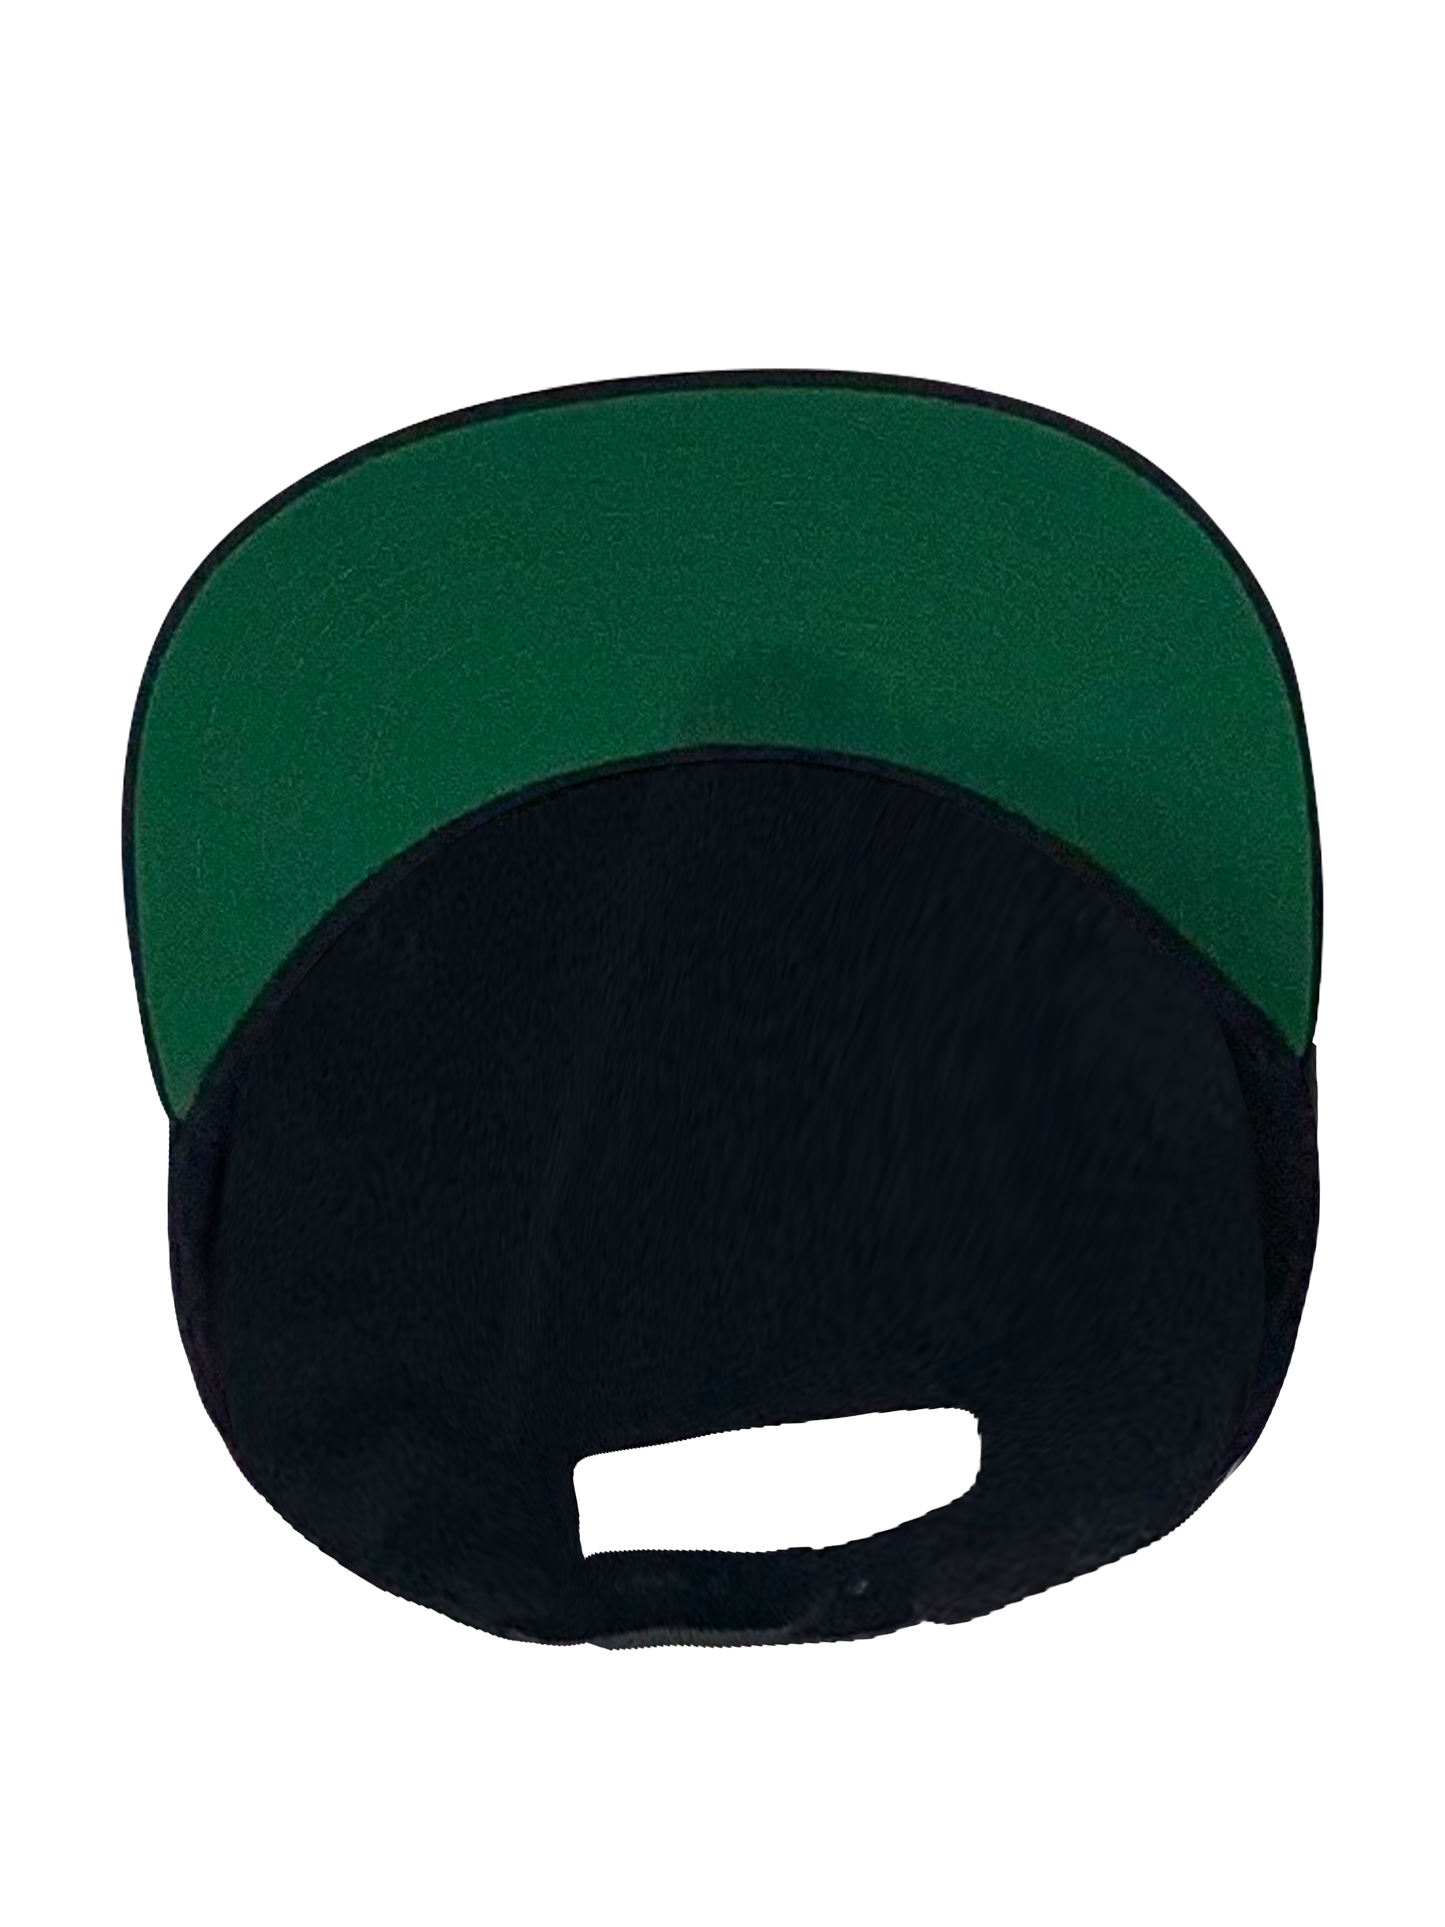 3D- O.G. Stick in Weiß auf der Frontseite, Innenschirm grün Weiß/Marineblau Verstellbarer Snapback Verschluß, Umfang 60cm, XLarge Bekleidung, X-Large Kappe, X_Large Marke